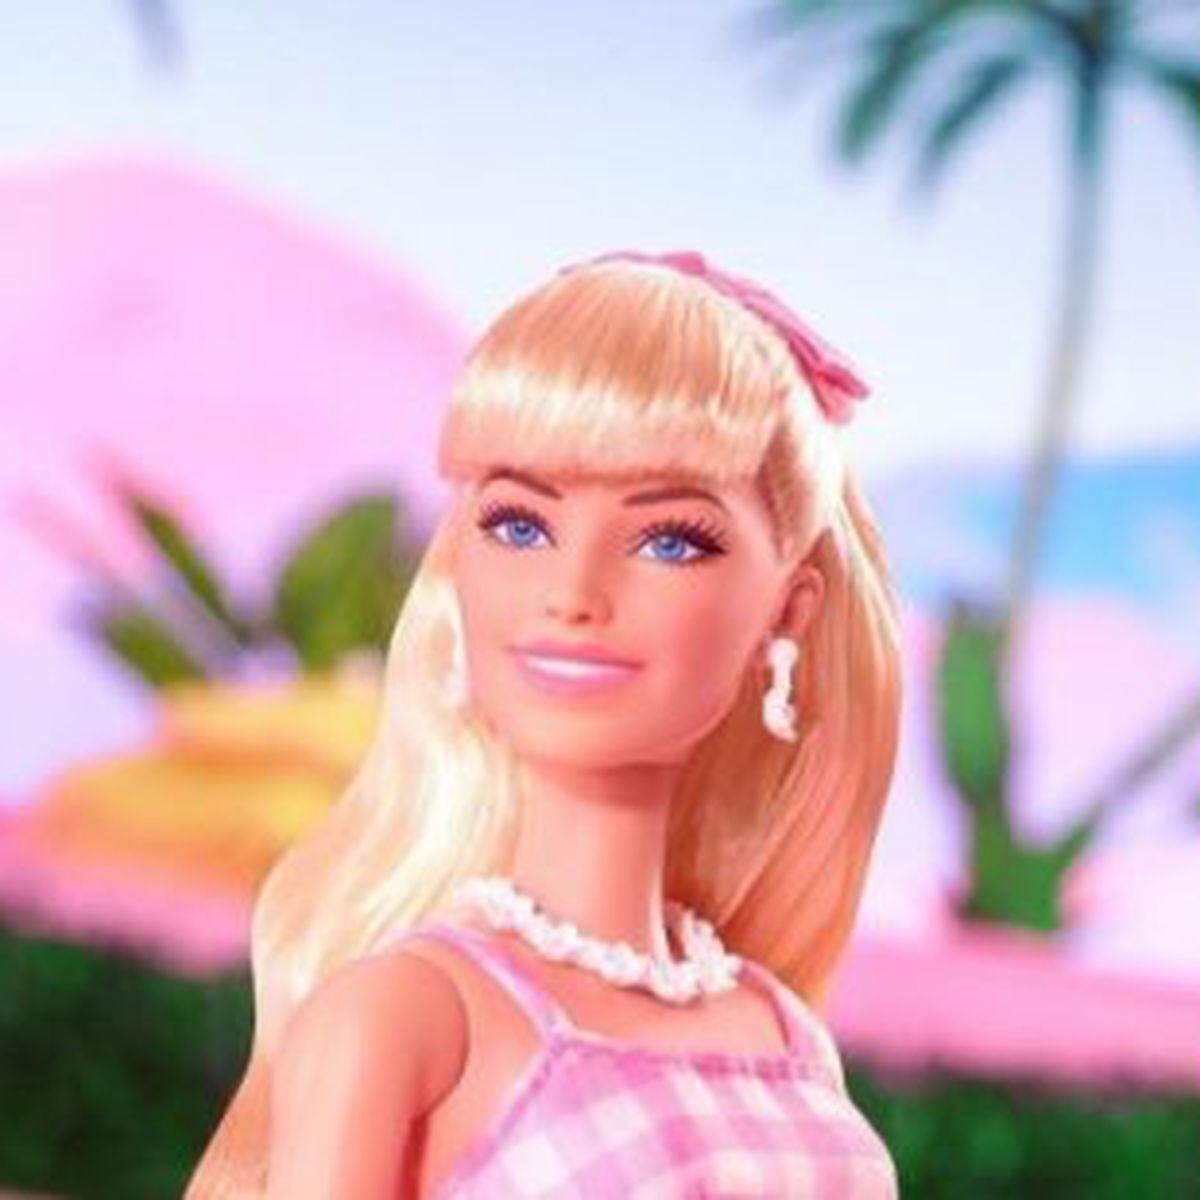 Filme da Barbie gera onda rosa no cinema e no comércio - 07/07